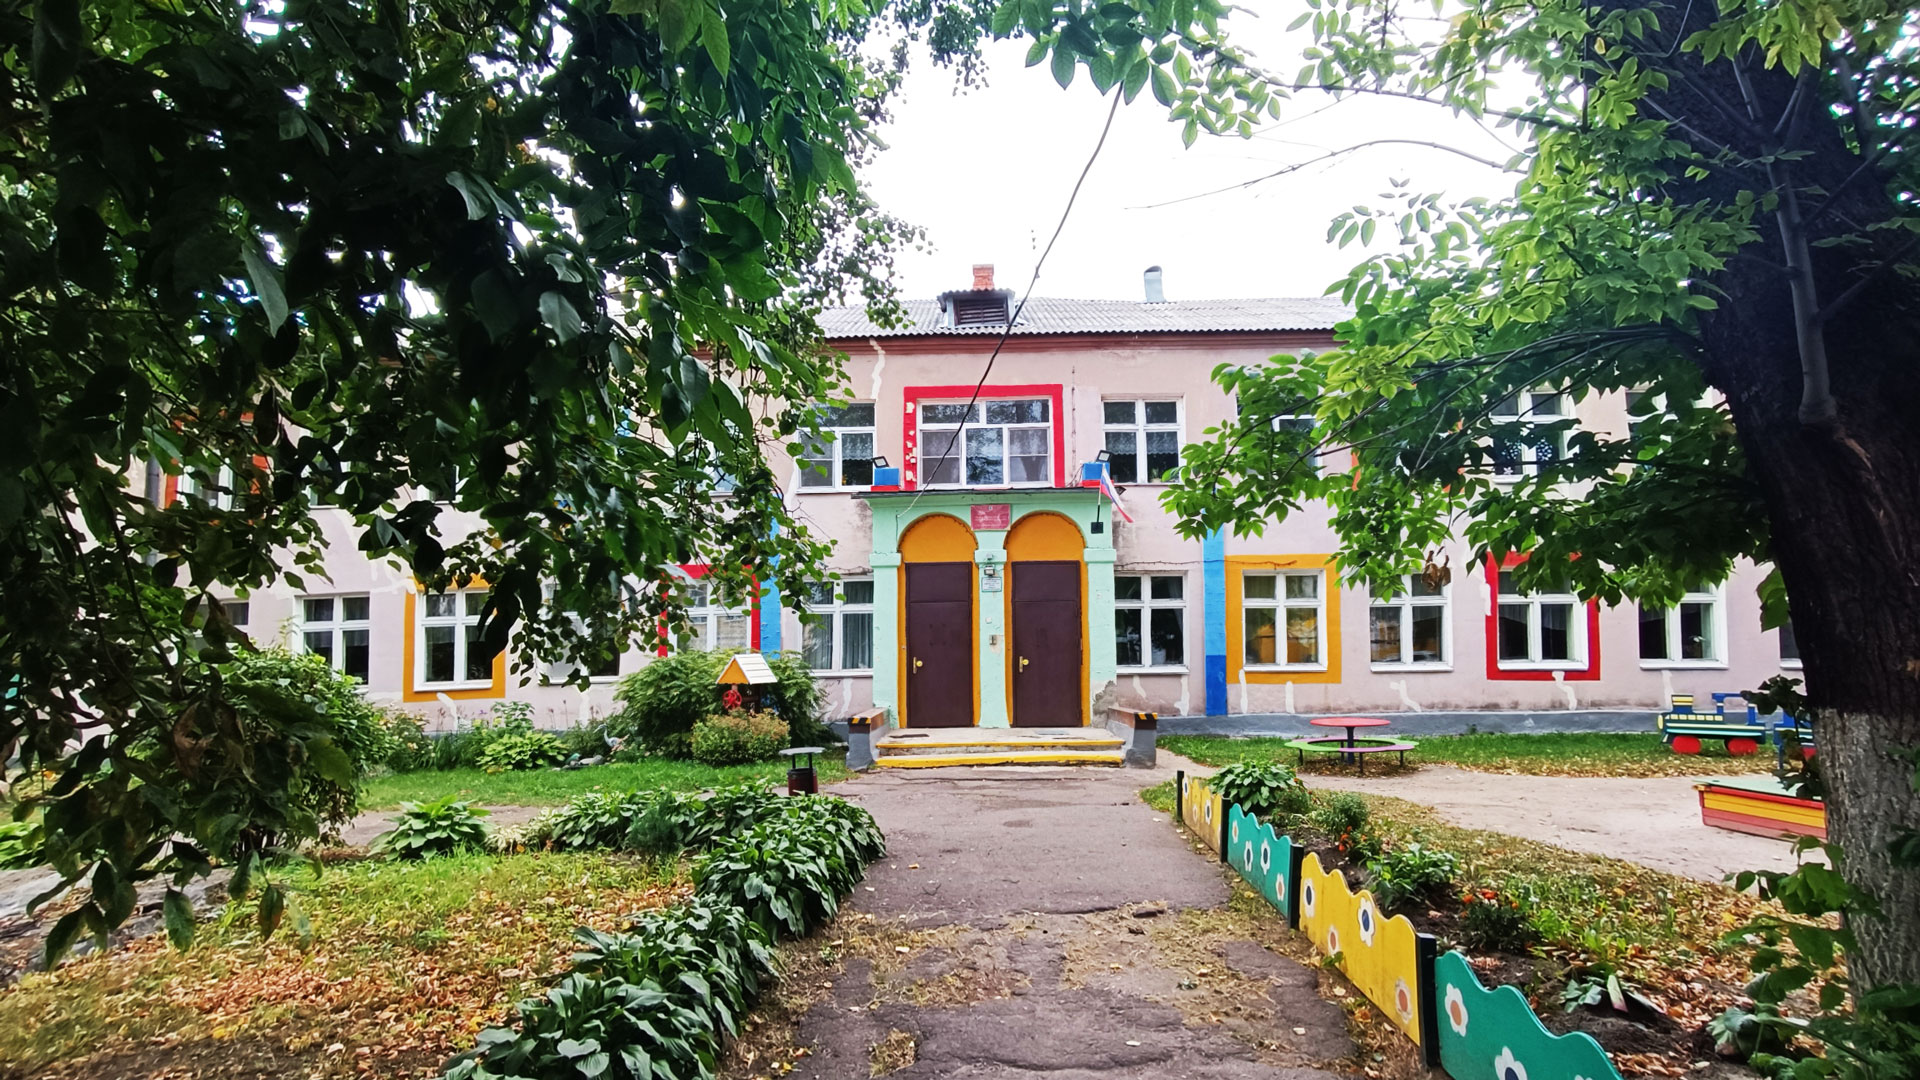 Детский сад 83 Ярославль: общий вид здания. 